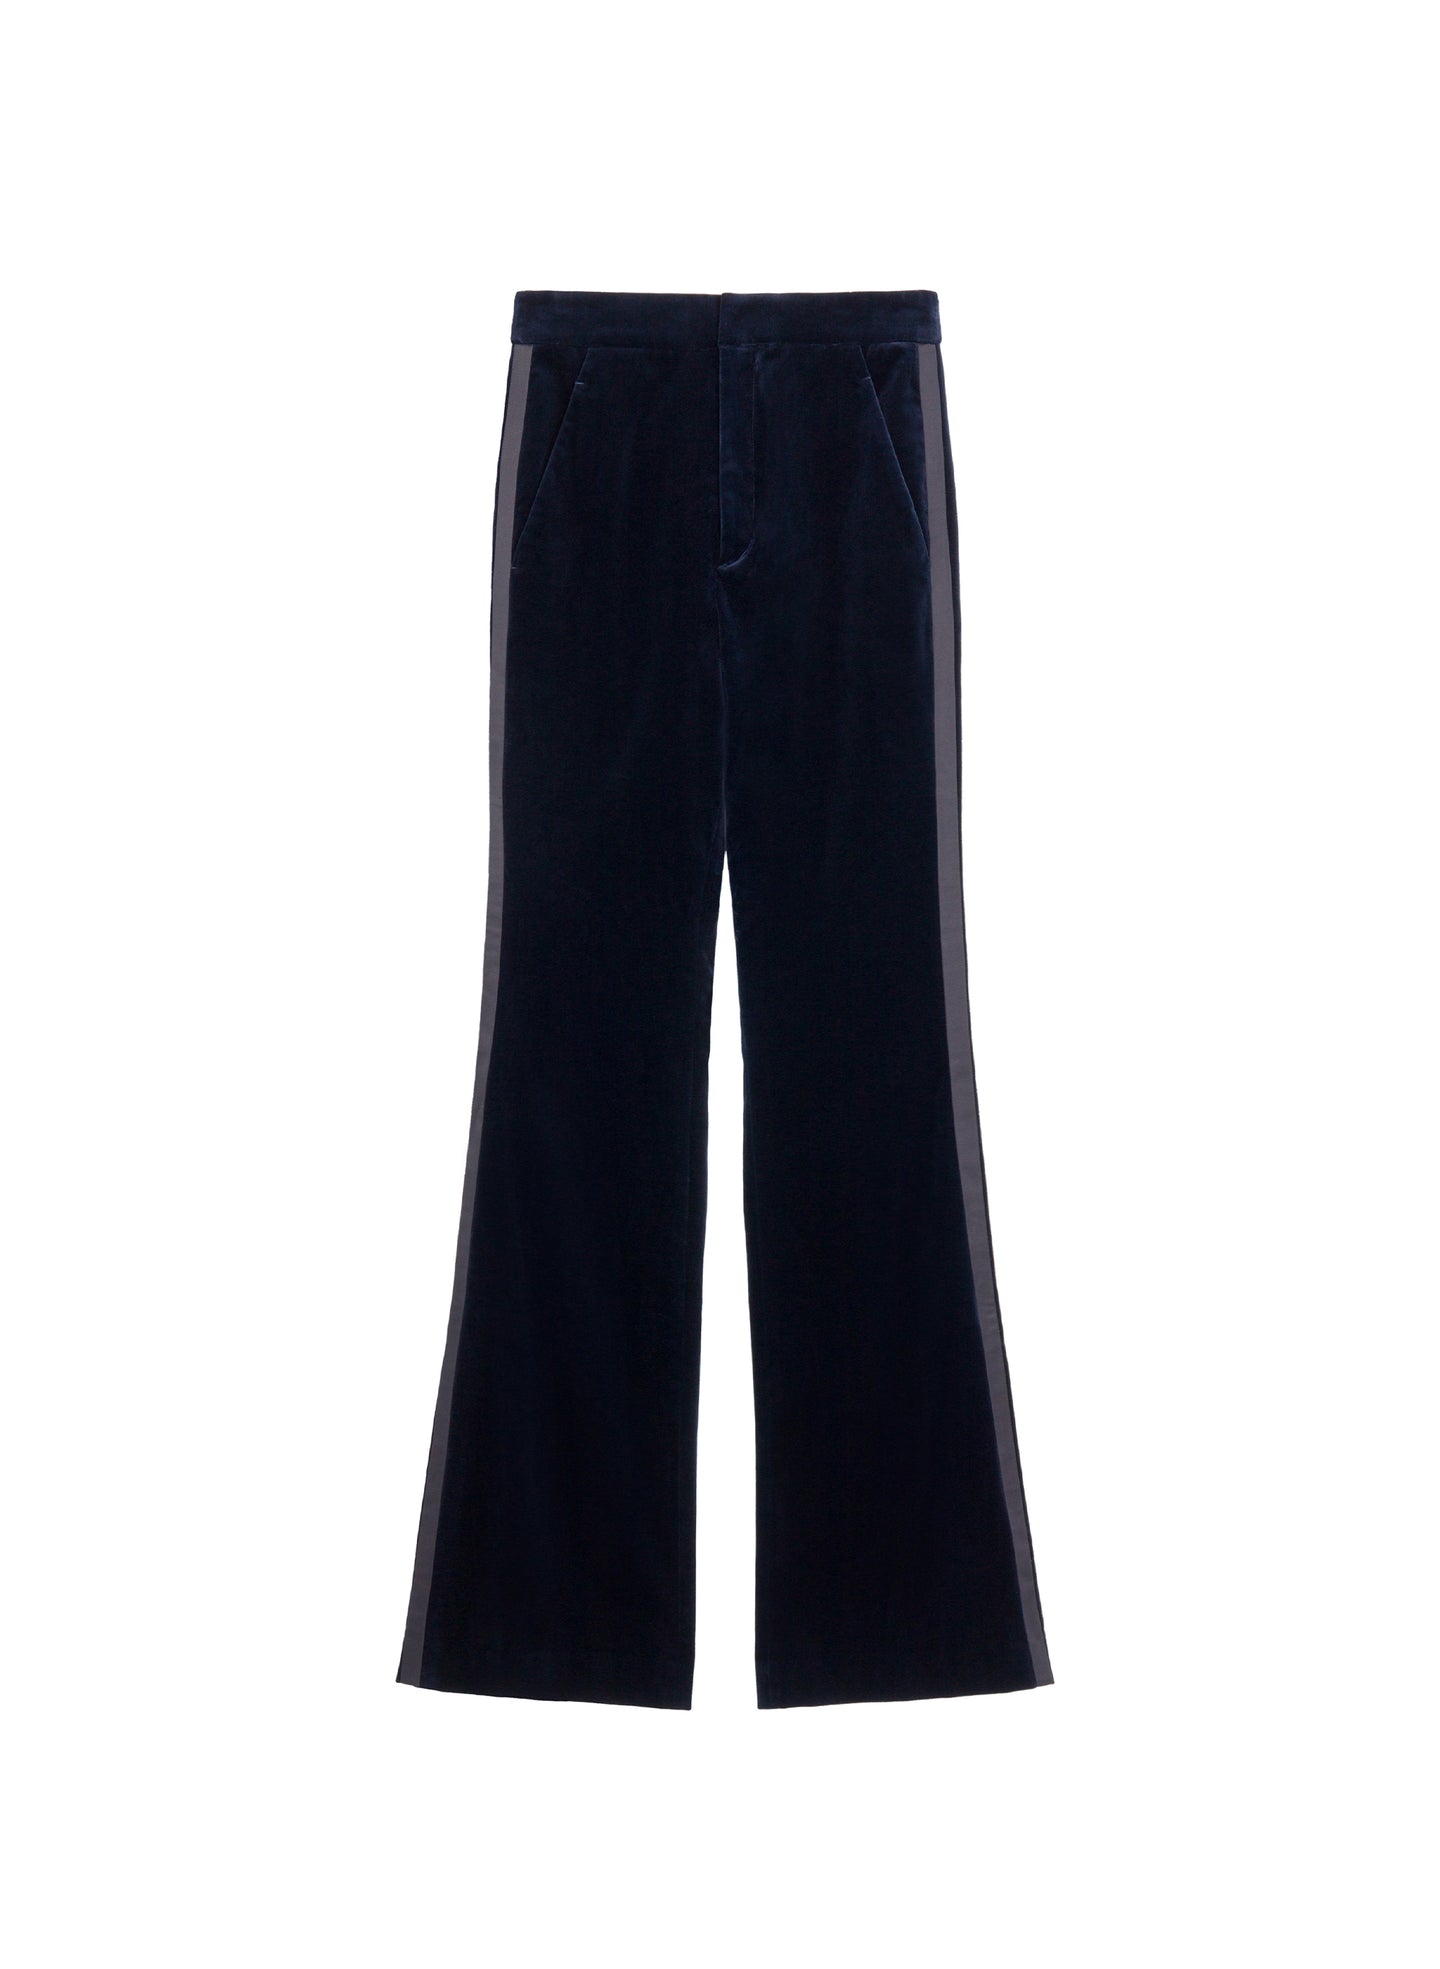 flatlay of navy blue velvet flared tuxedo pants